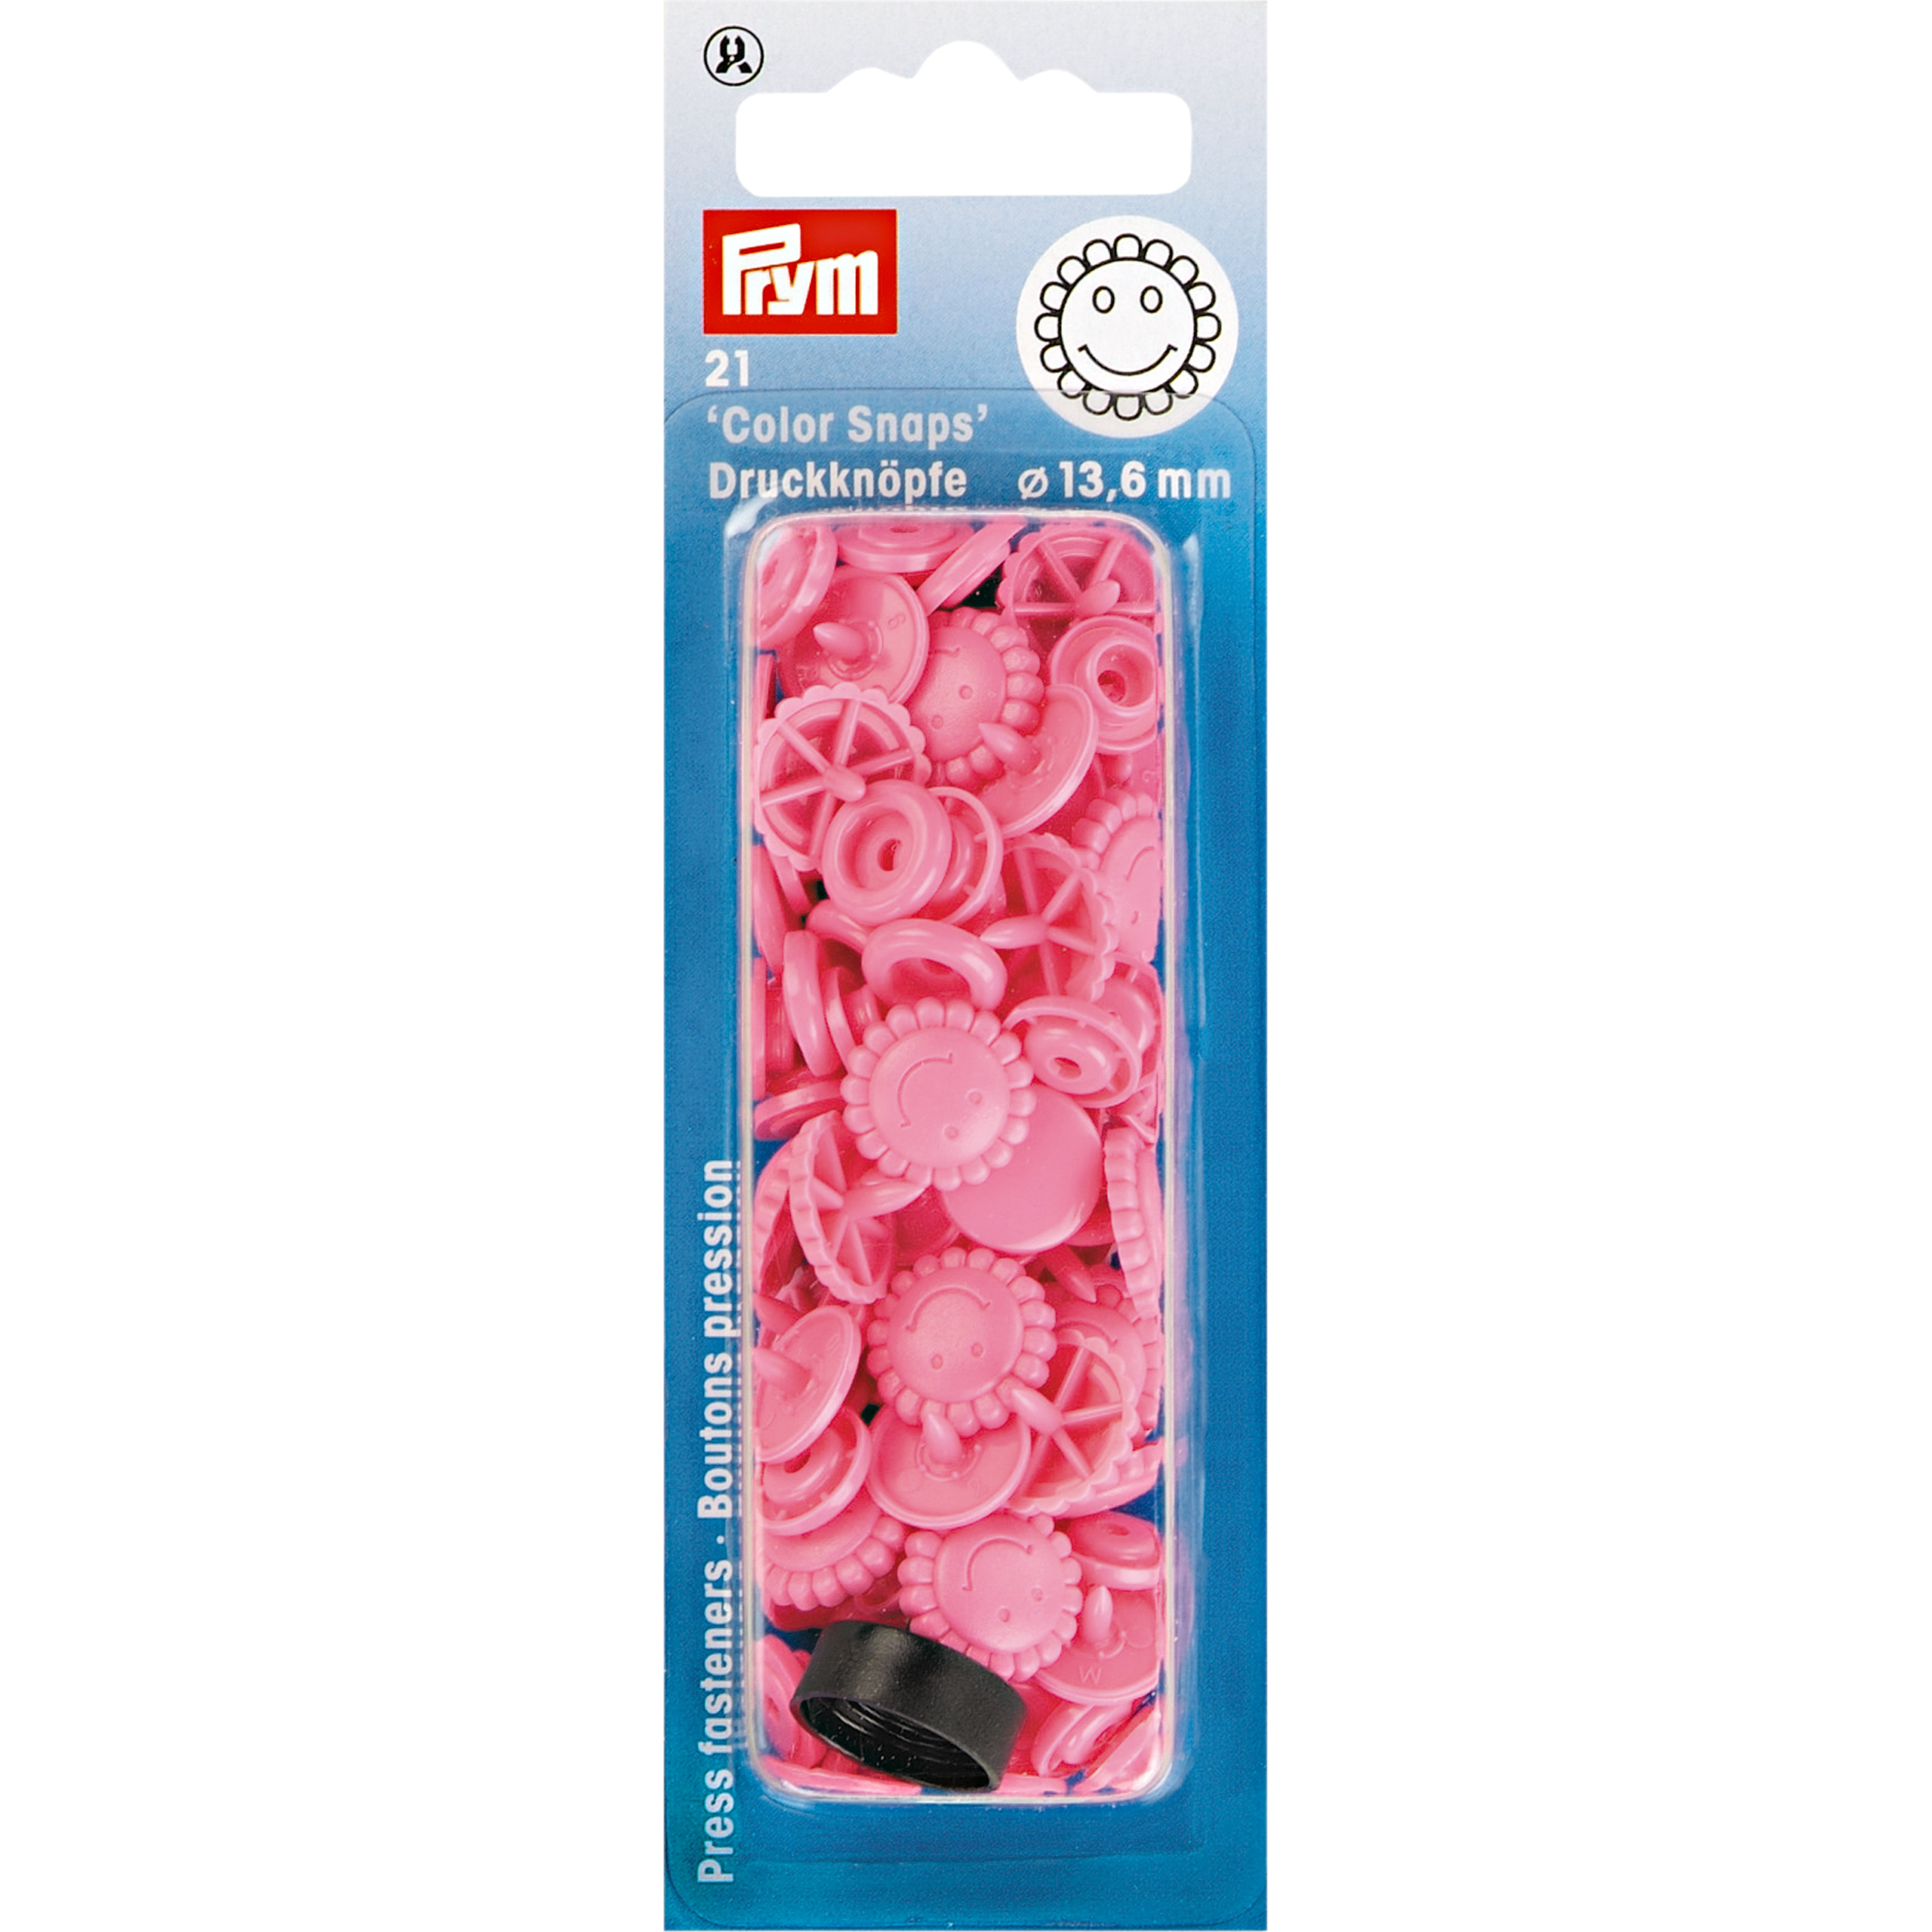 Nähfrei-Druckknöpfe Color Snaps Blume 13,6 mm, 21 St  von Prym pink